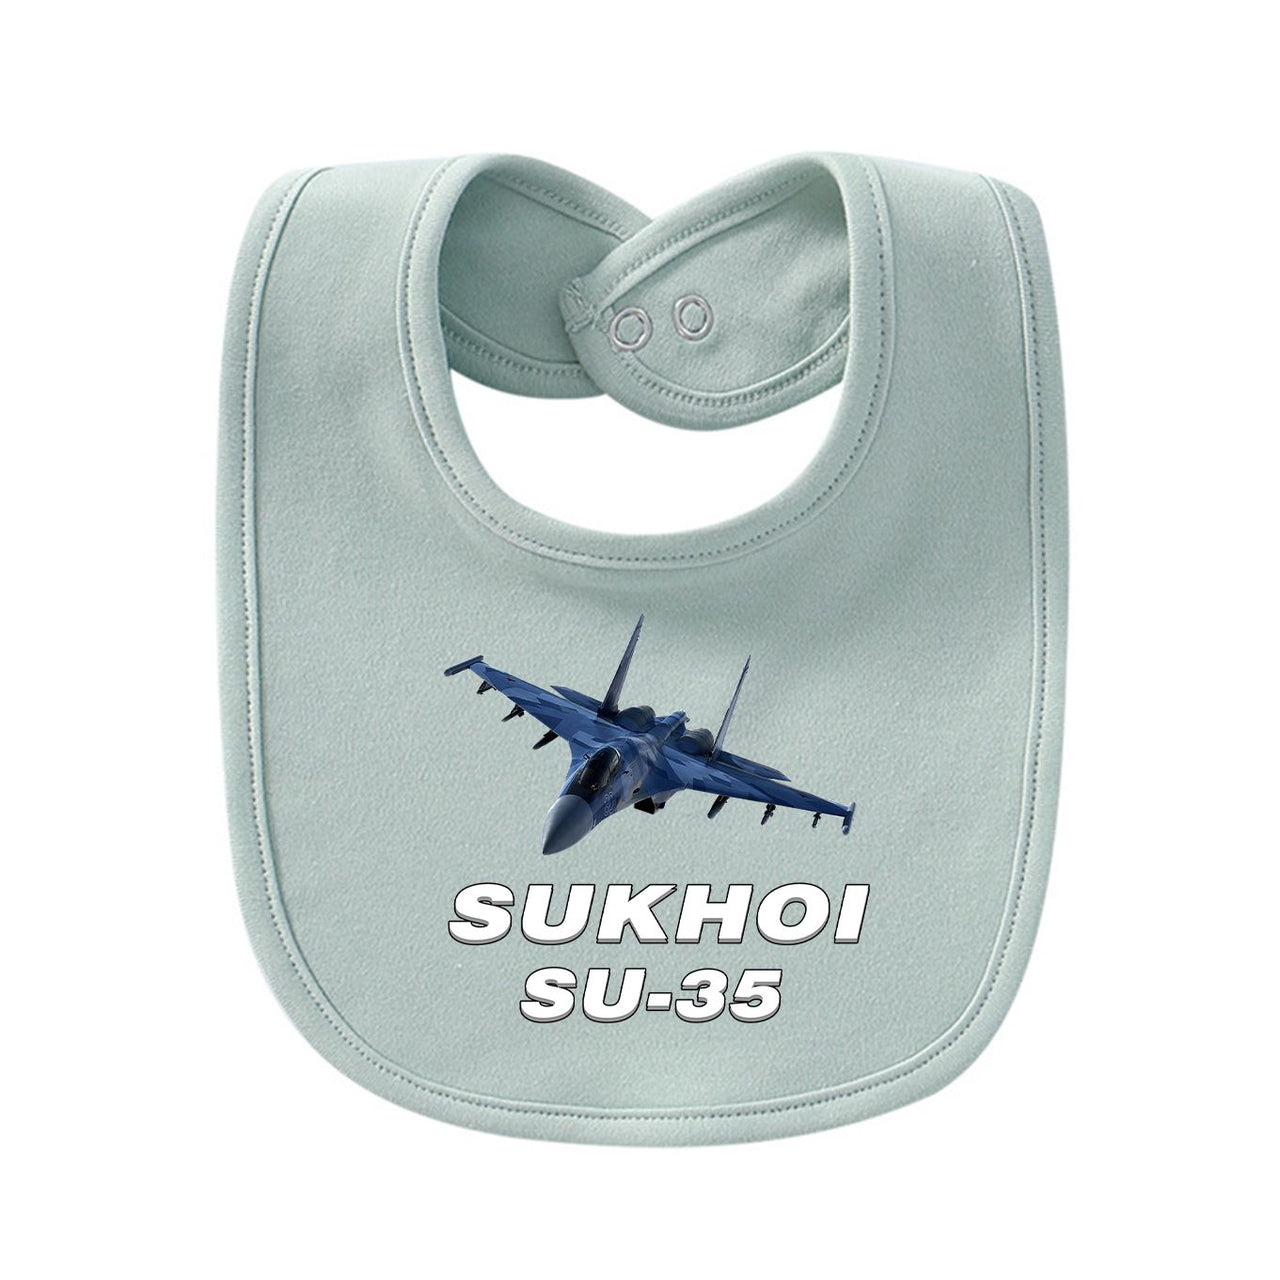 The Sukhoi SU-35 Designed Baby Saliva & Feeding Towels